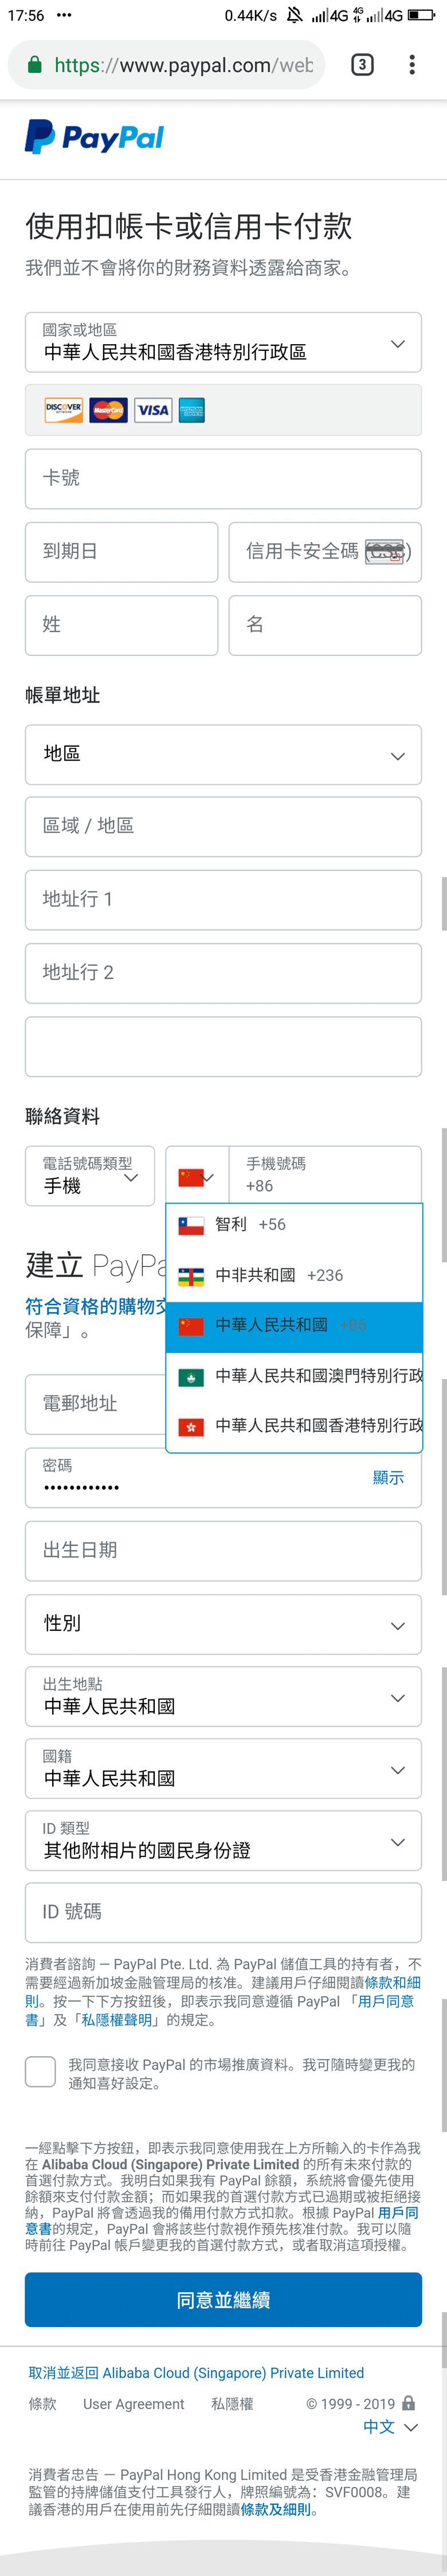 注册香港PayPal并绑定大陆手机号方法插图1